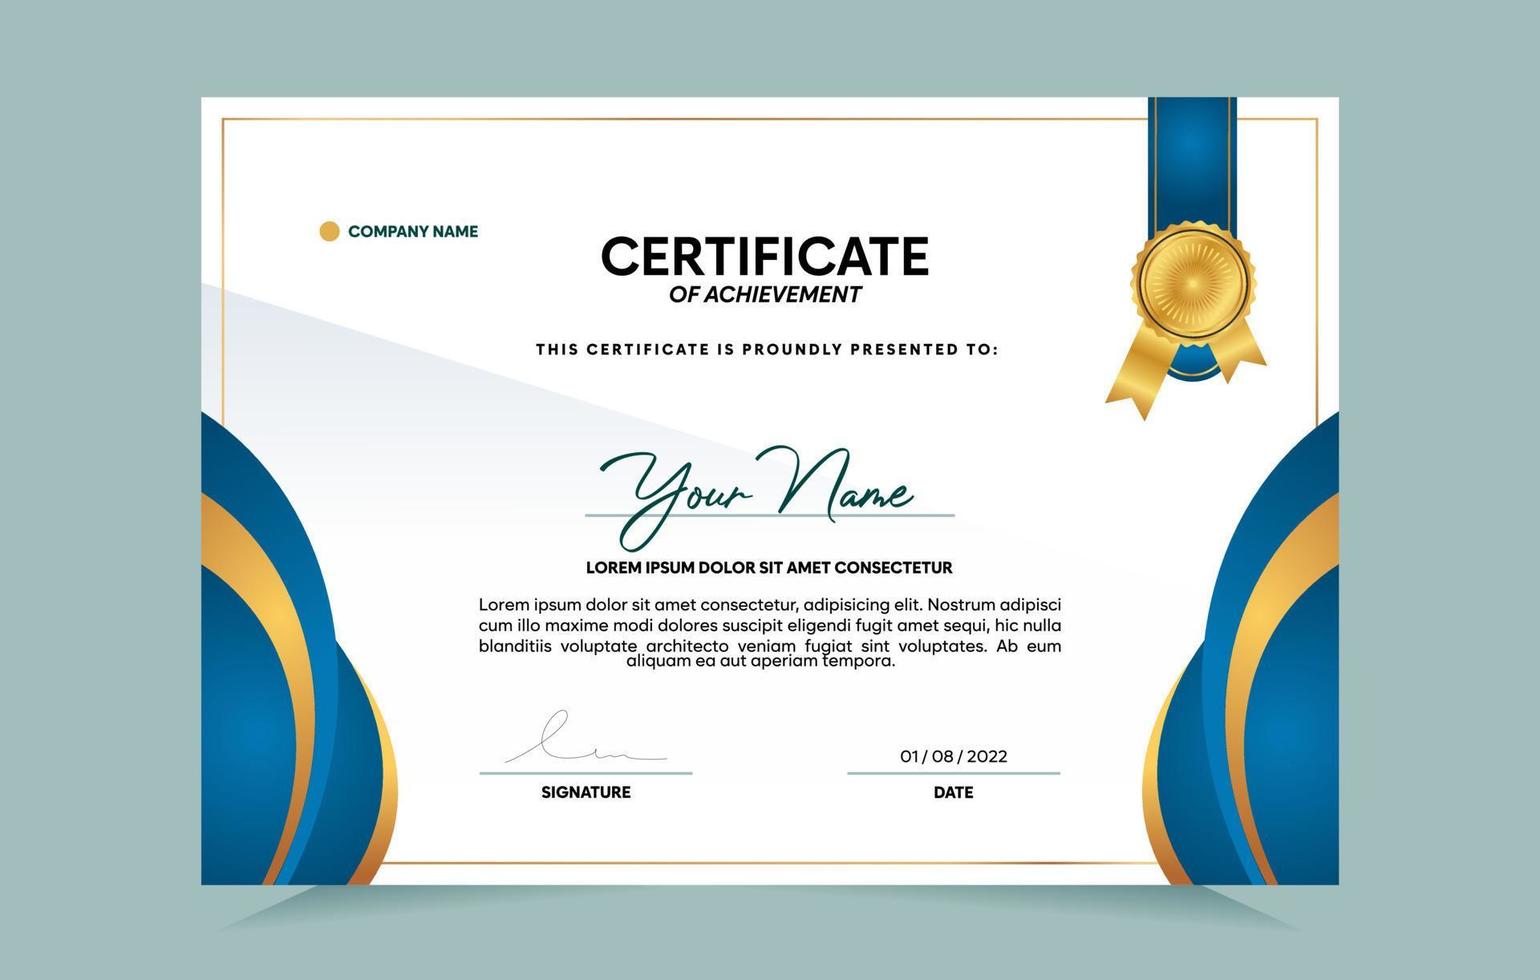 blauw en goud certificaat van prestatie-sjabloon ingesteld met gouden badge en rand. voor prijs-, bedrijfs- en onderwijsbehoeften. vector illustratie